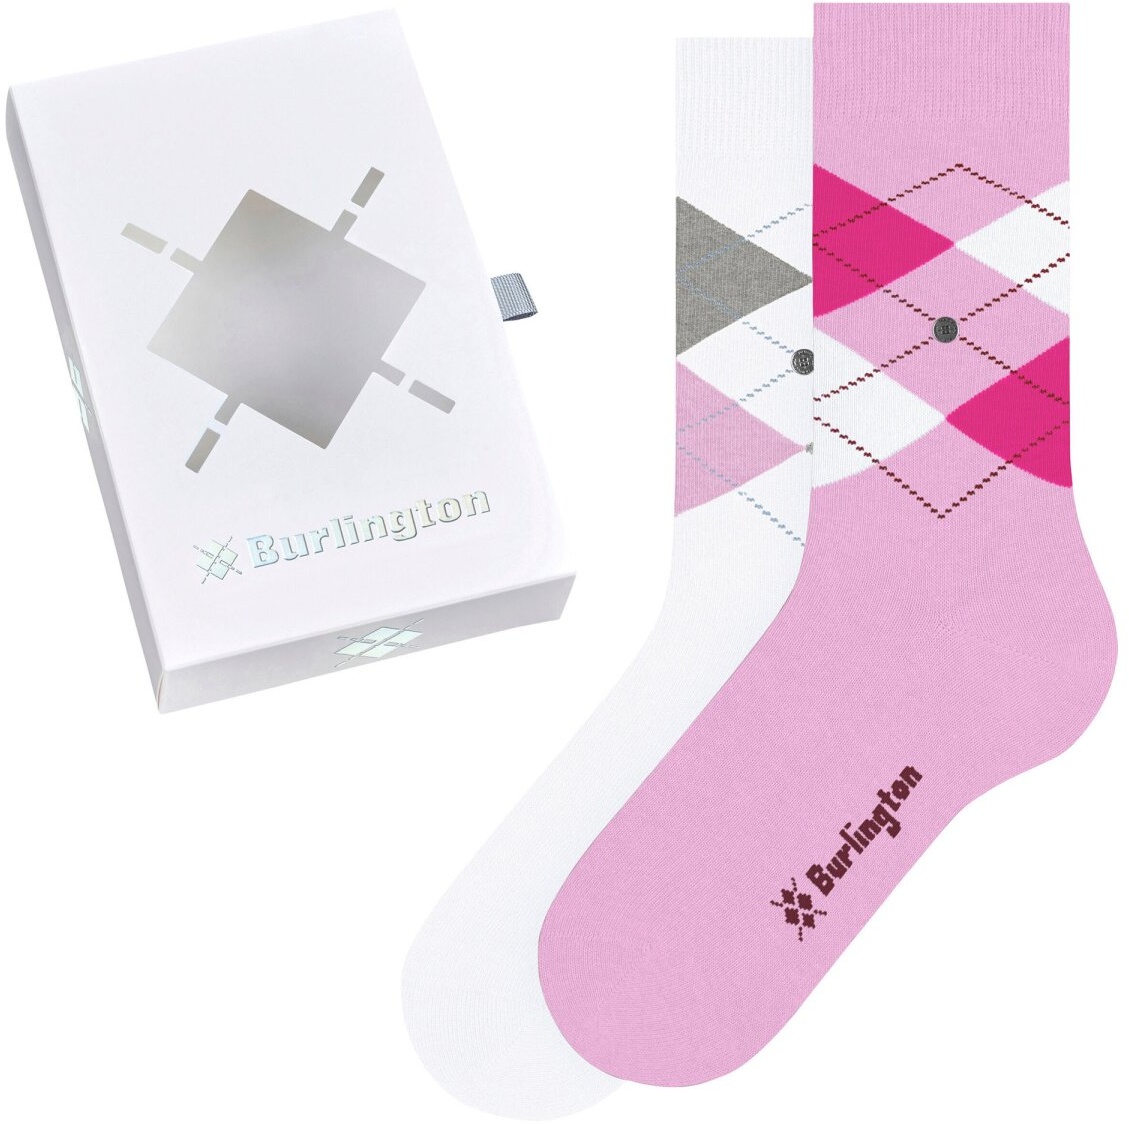 Burlington Damen Socken, 2er Pack - Geschenk-Set, Argyle, Raute, Onesize Pink/Weiß 36-41